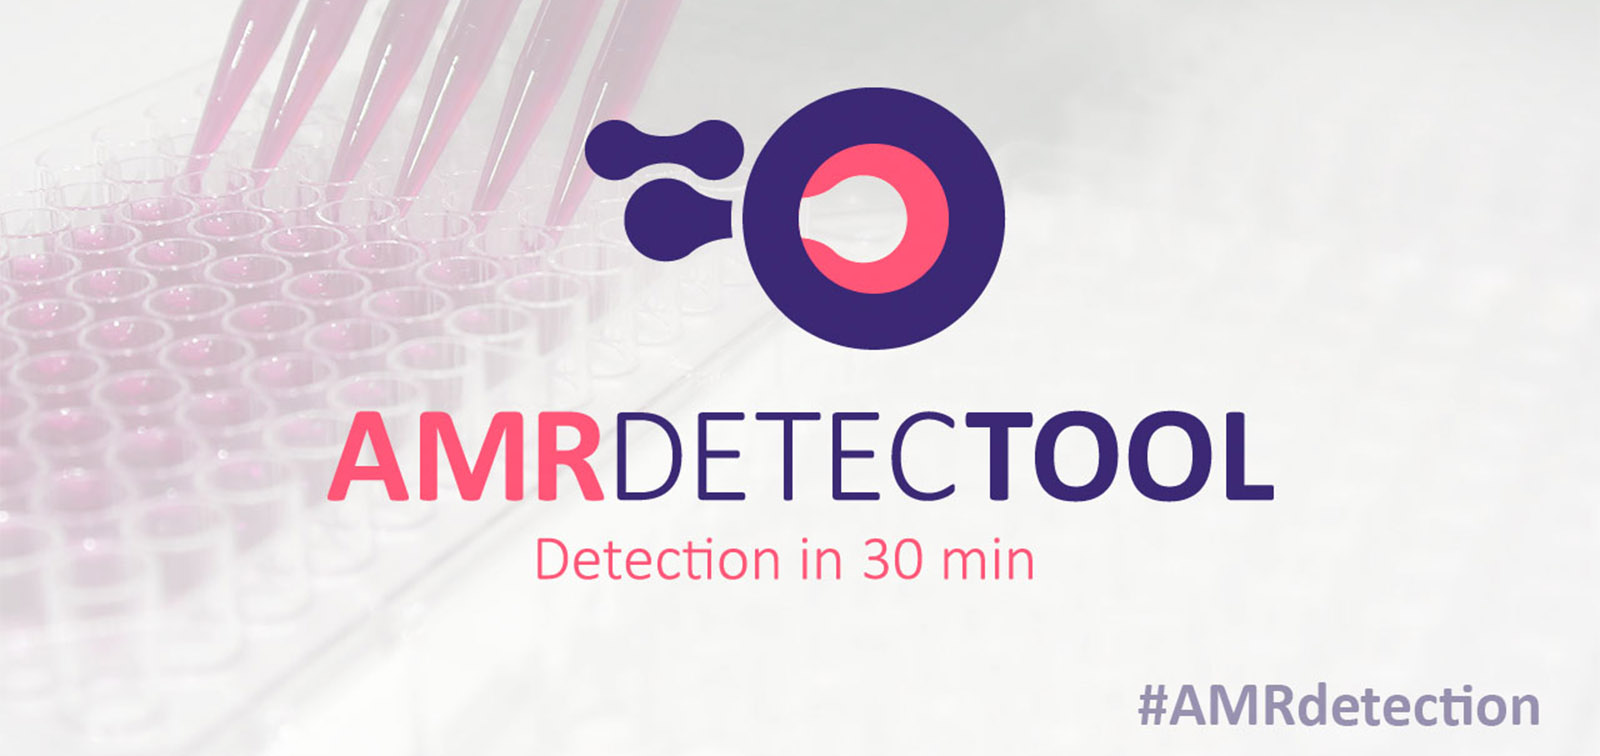 Projecte AMR DetecTool finançat per EIT Health